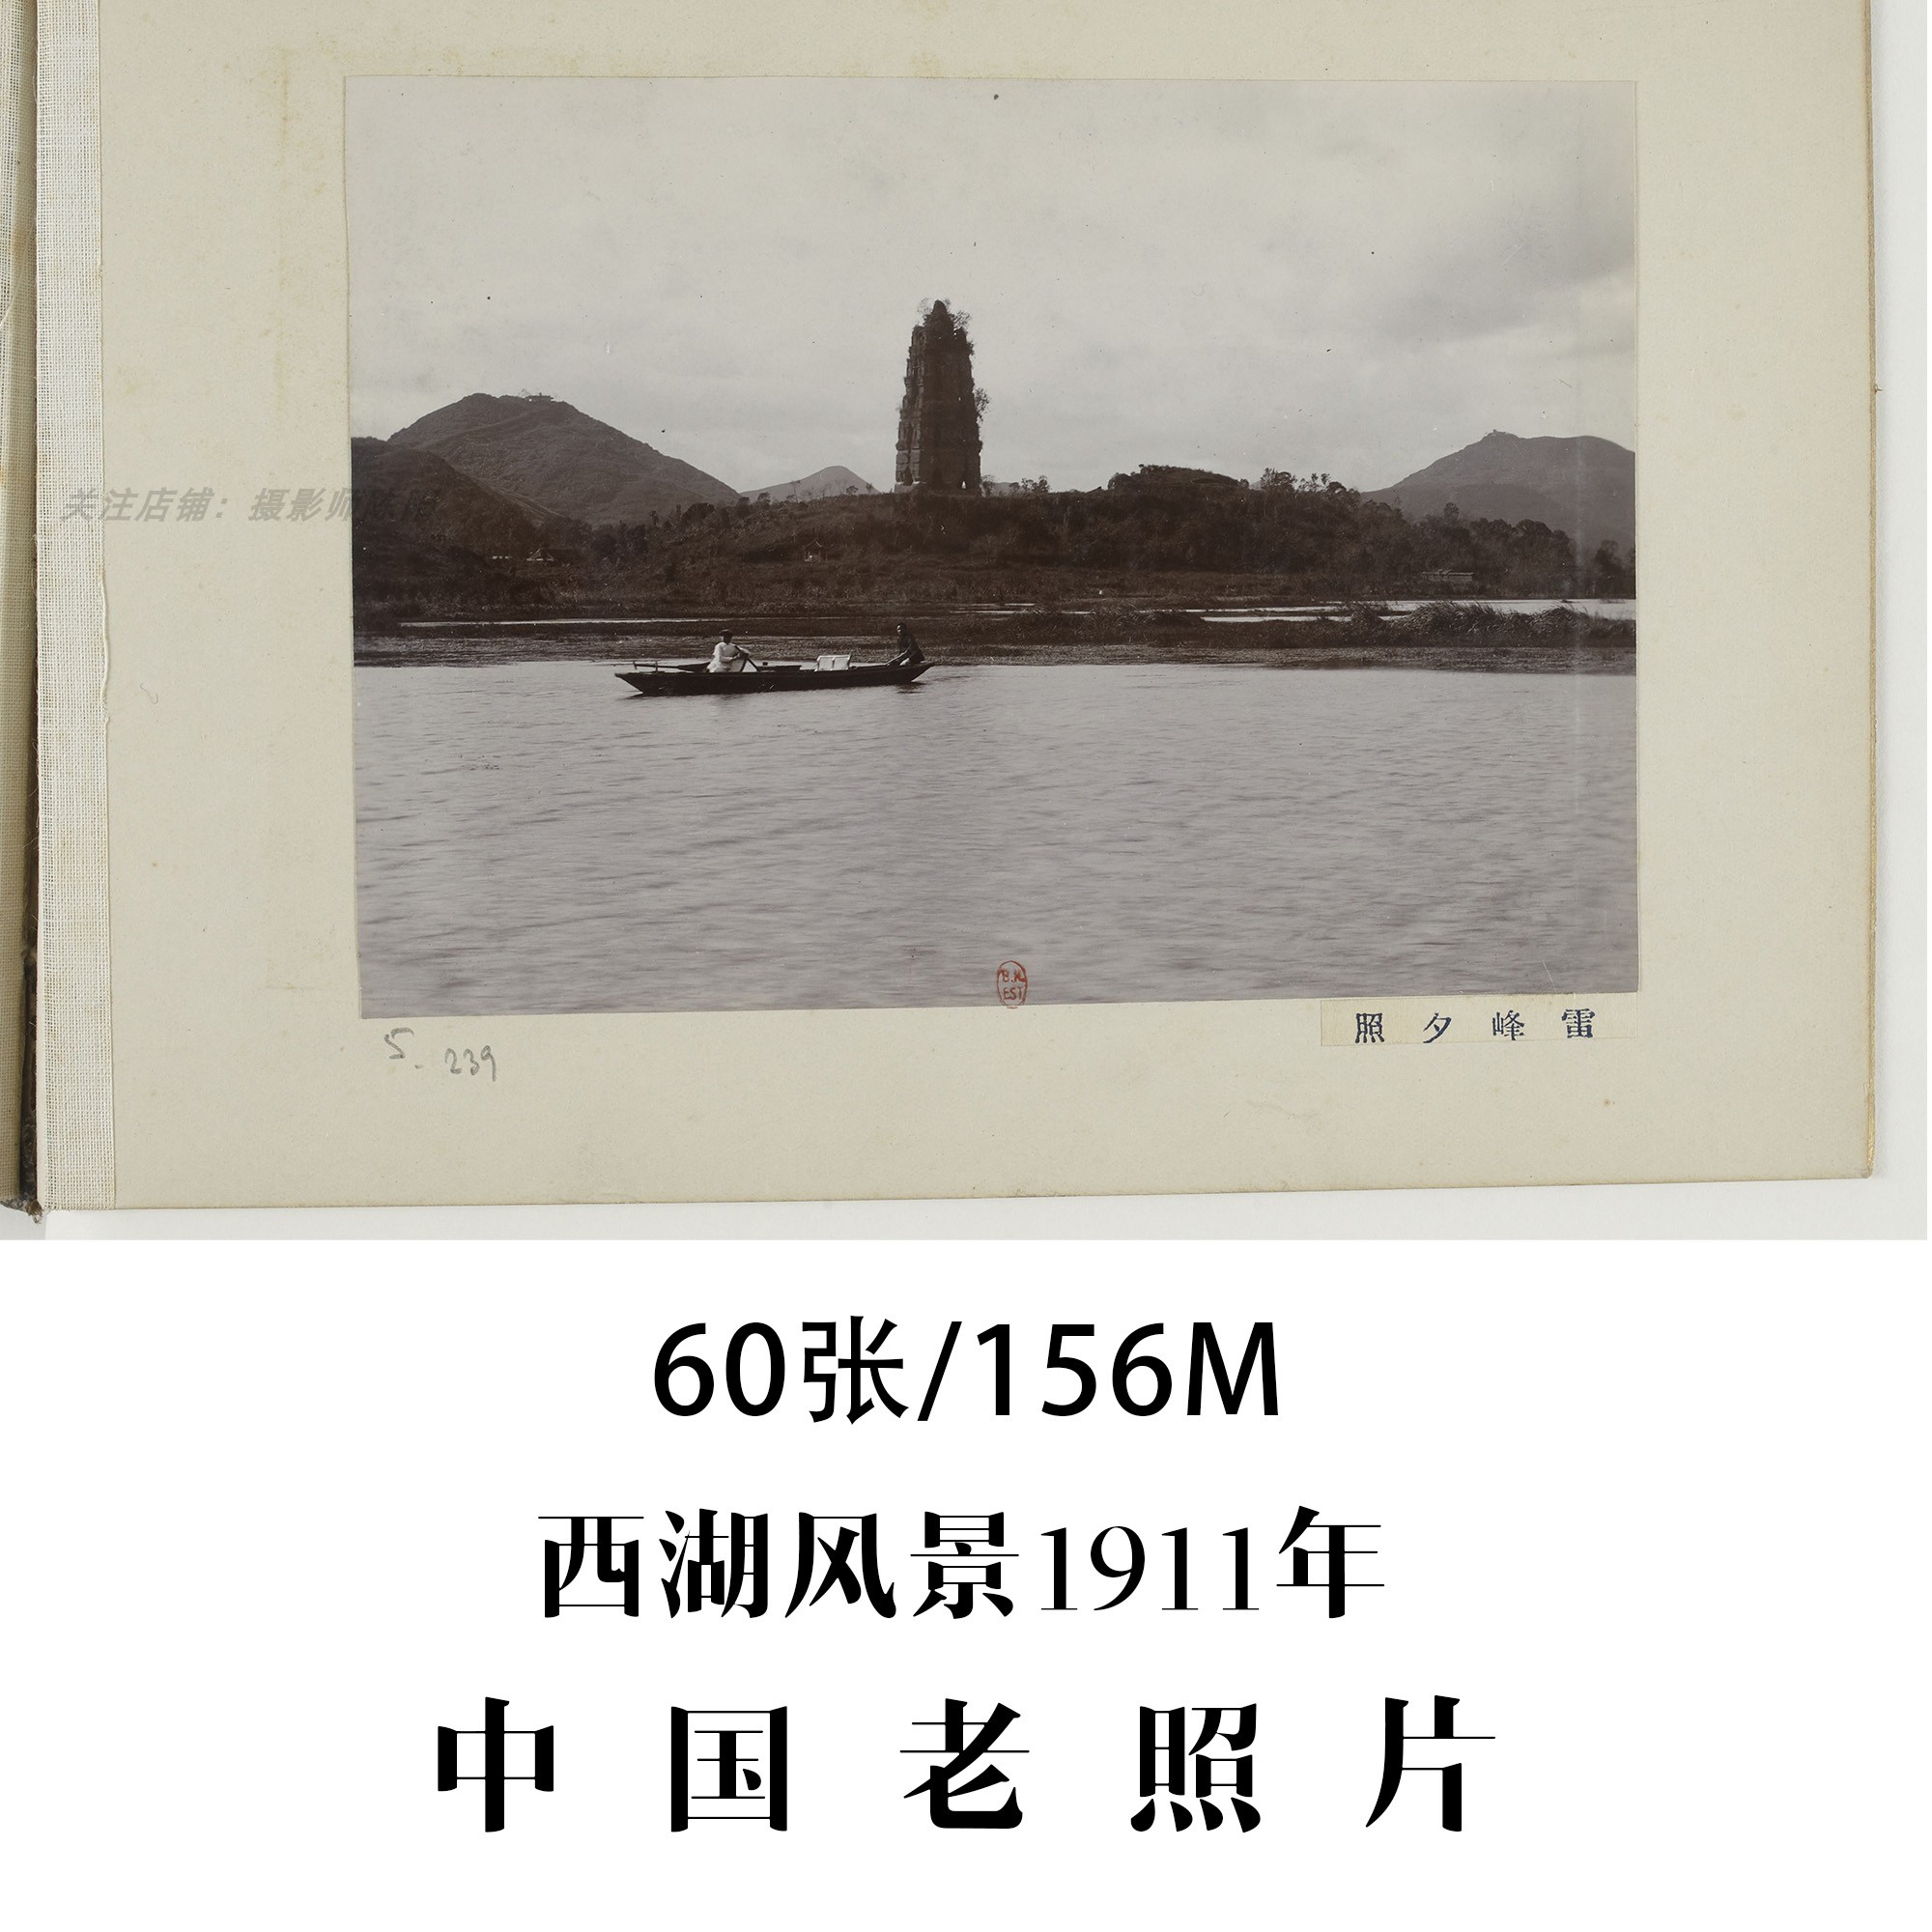 中国老照片西湖风景1911年摄影集电子图片